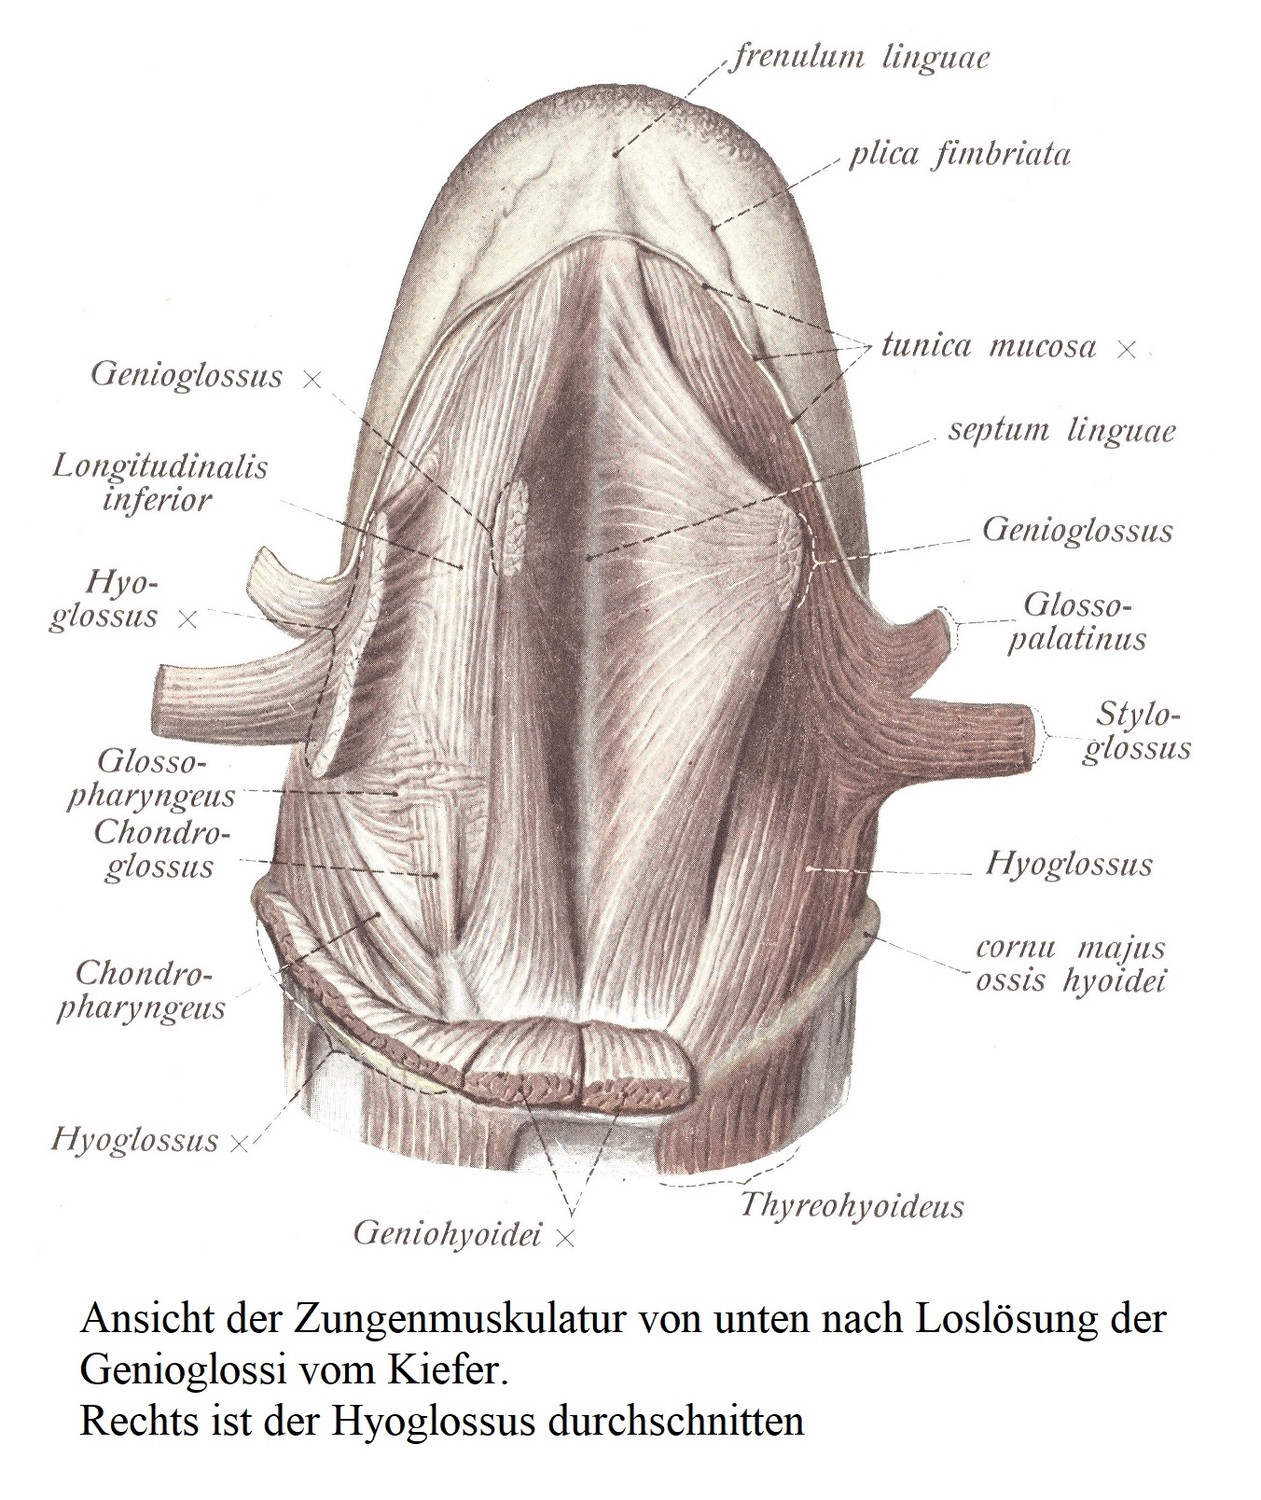 Вид мышц языка снизу после отделения подбородочно-язычных мышц от челюсти. Подъязычная мышца разделена справа